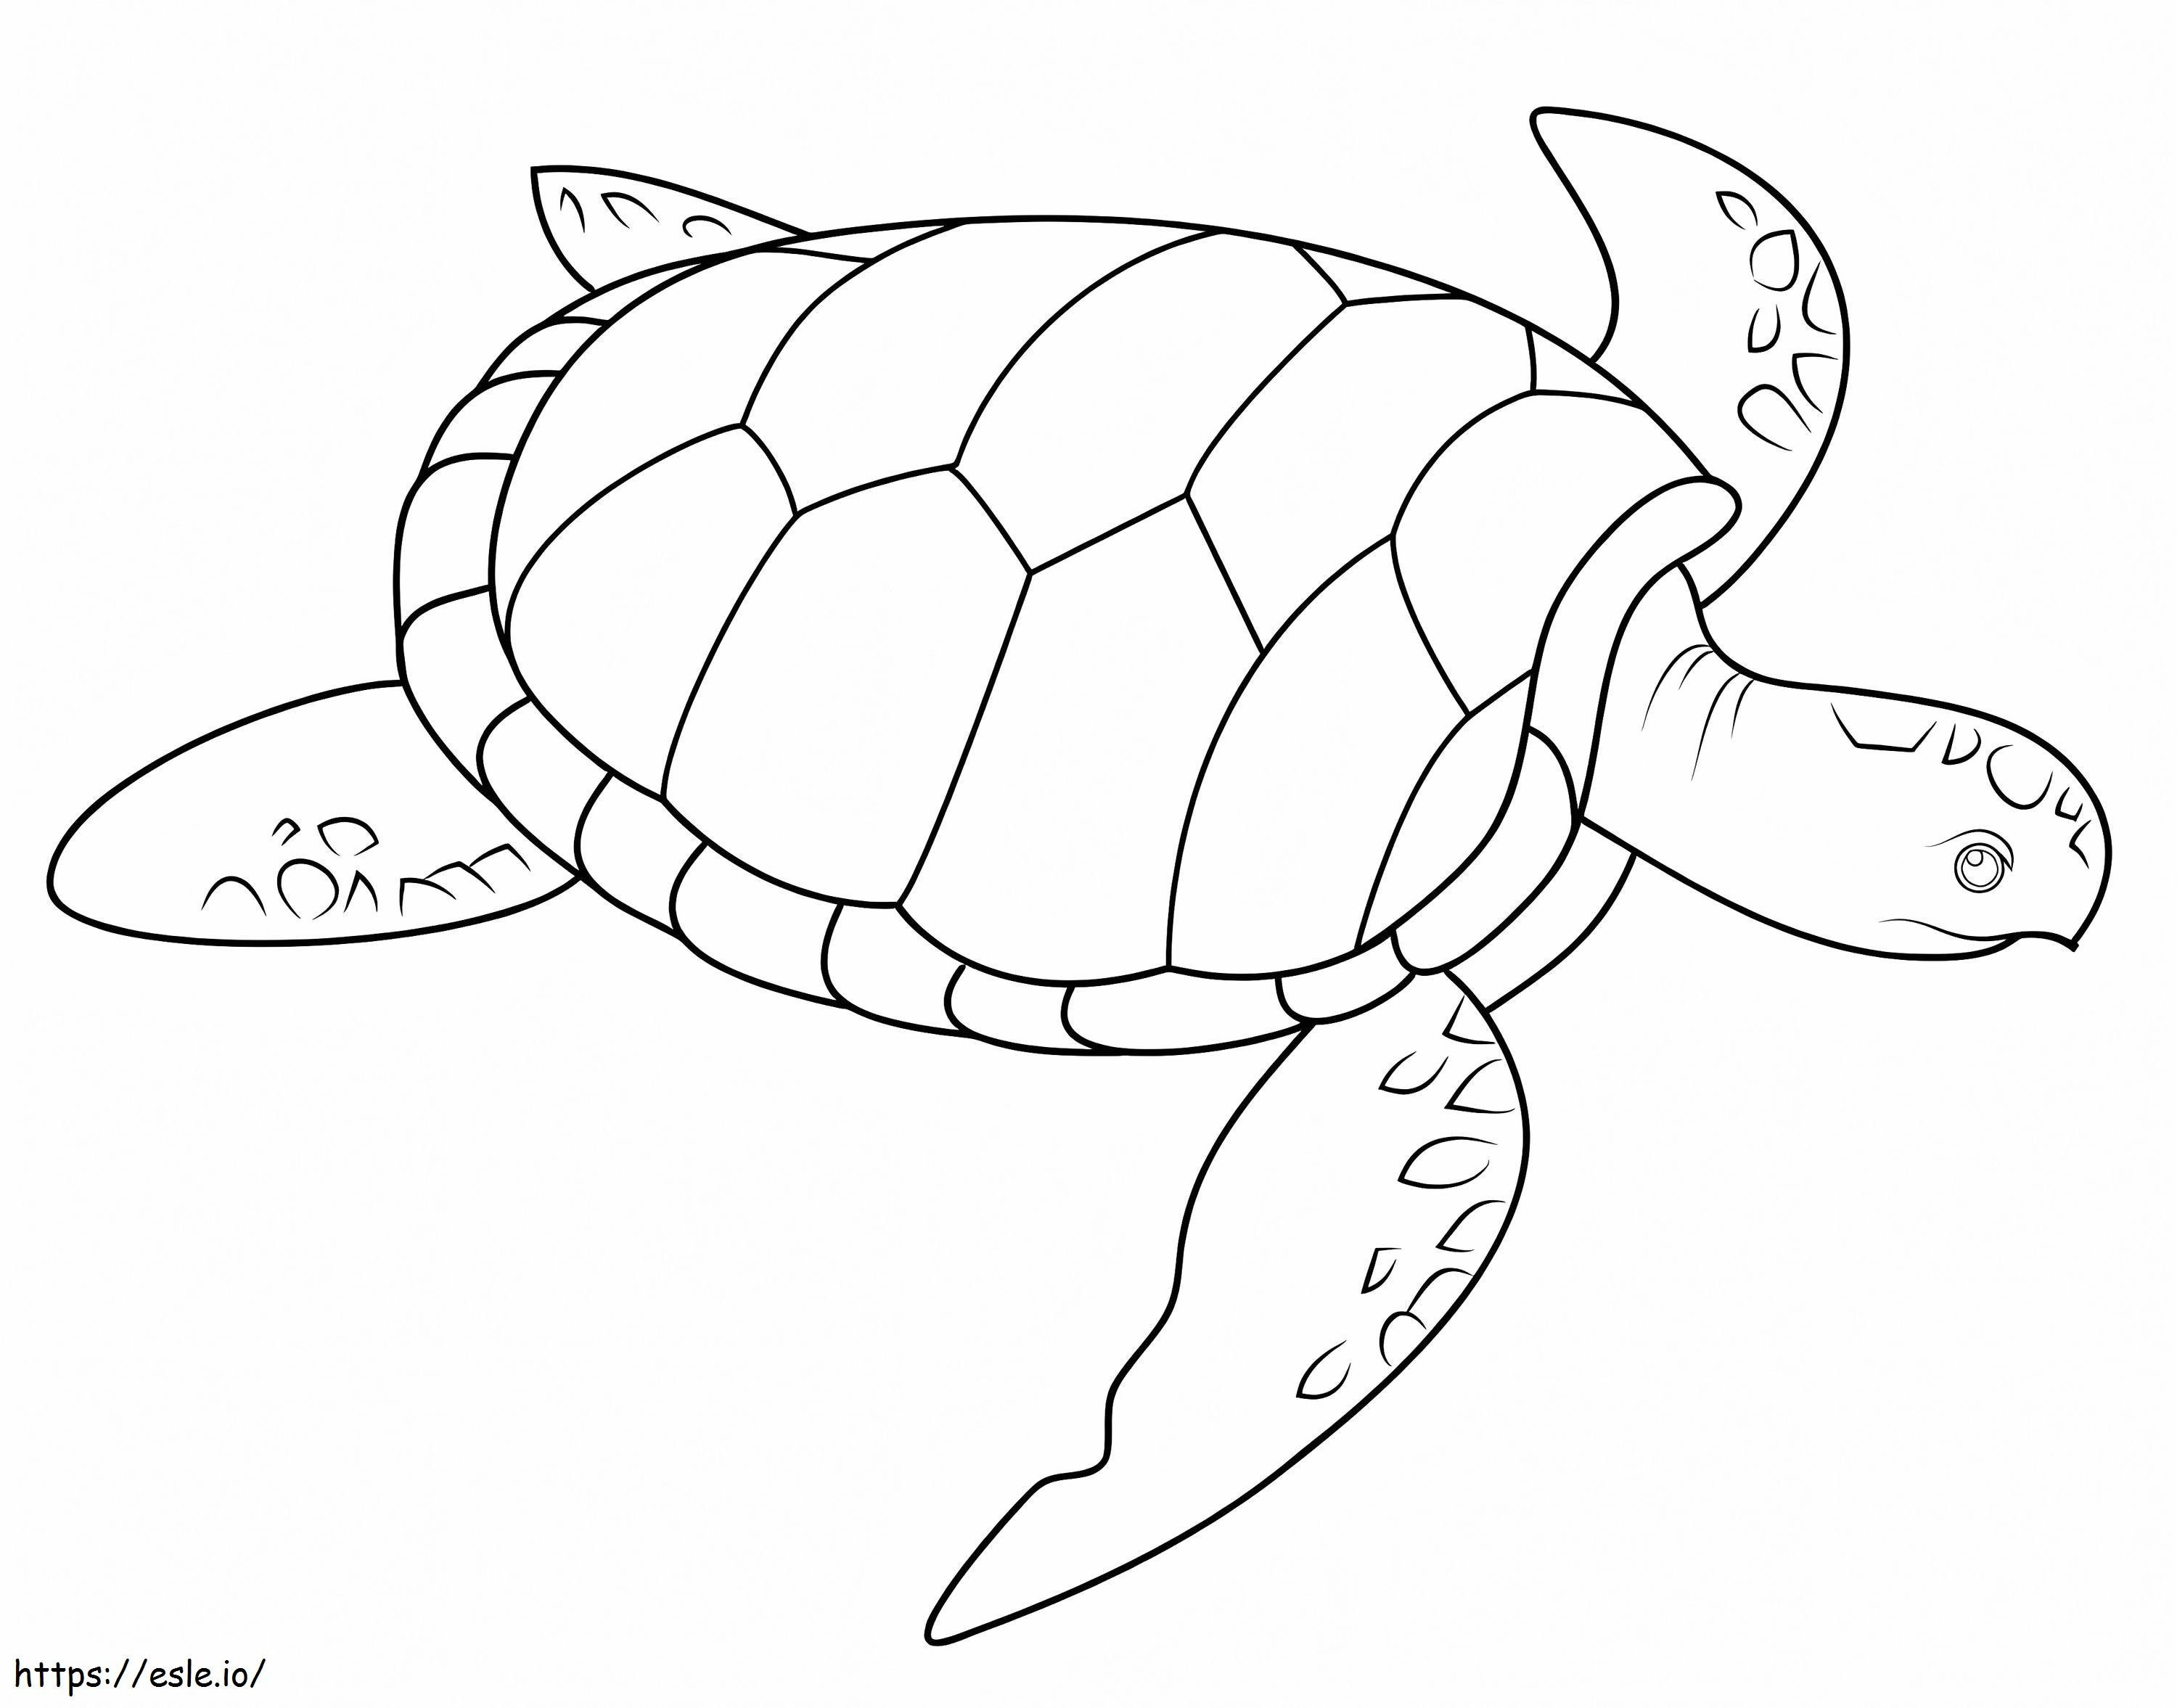 Żółw morski kolorowanka